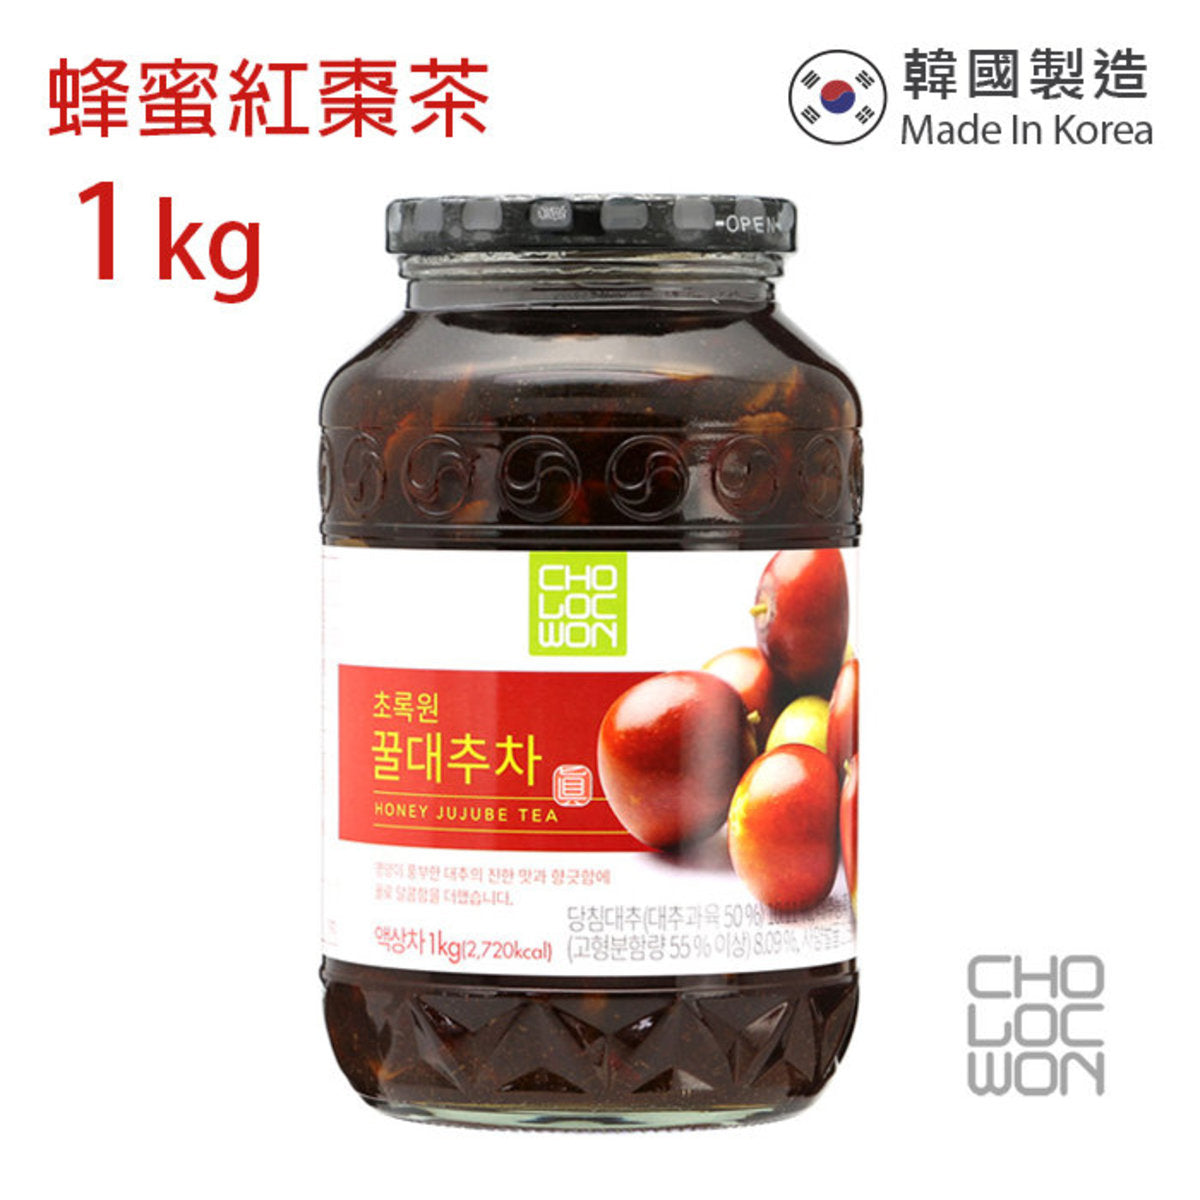 草綠園 - 韓國蜂蜜紅棗茶 Korean Honey Jujube Tea 1kg